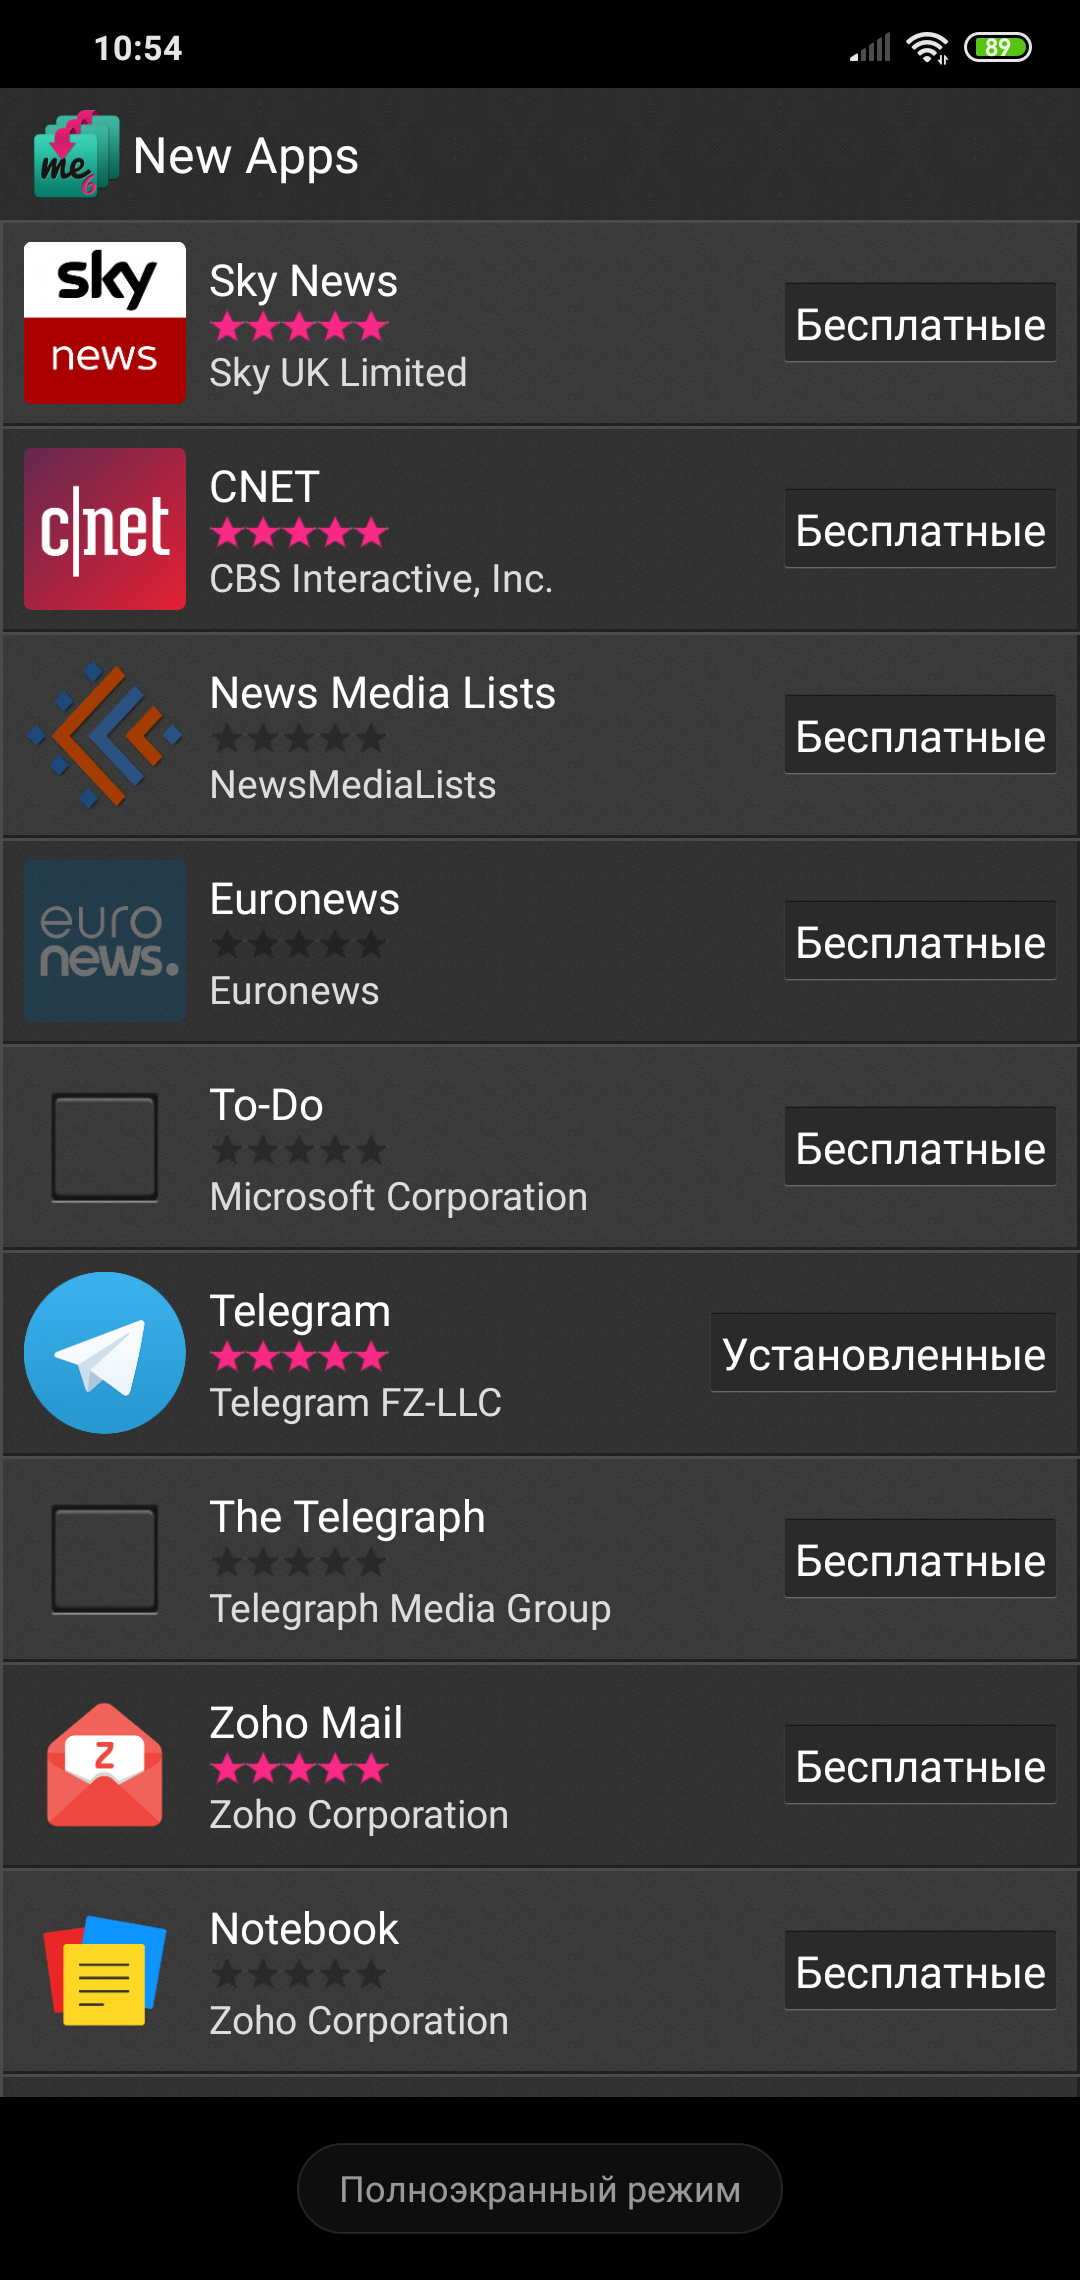 Установить телеграмм на андроид бесплатно на русском языке скачать полную версию фото 54